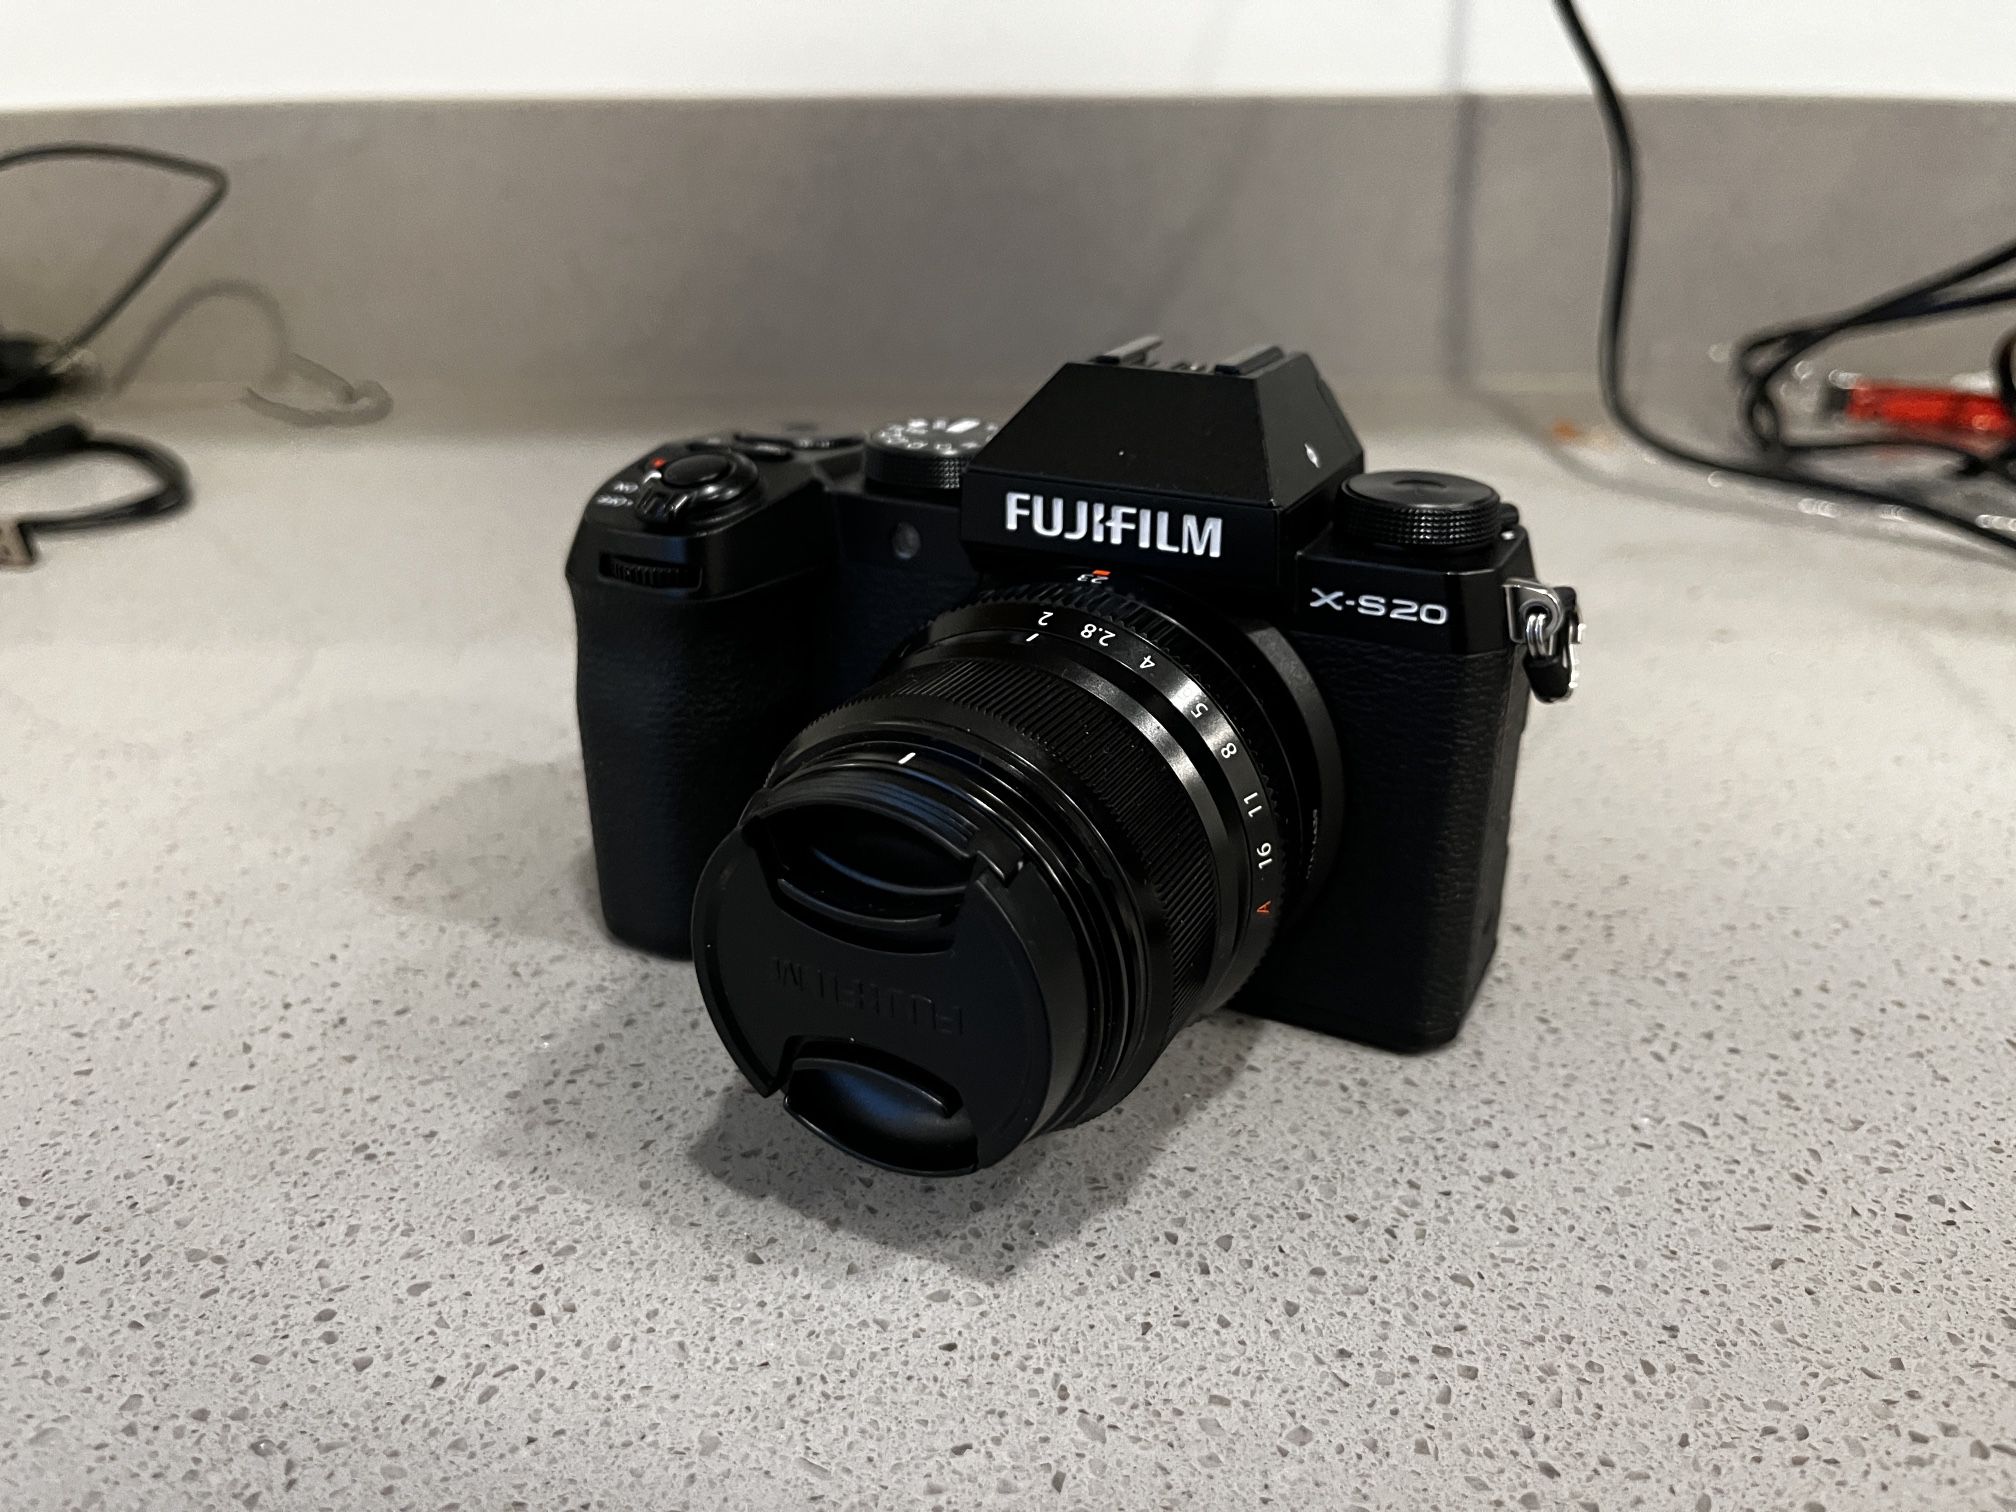 Fuji X-S20 with XF23 F2